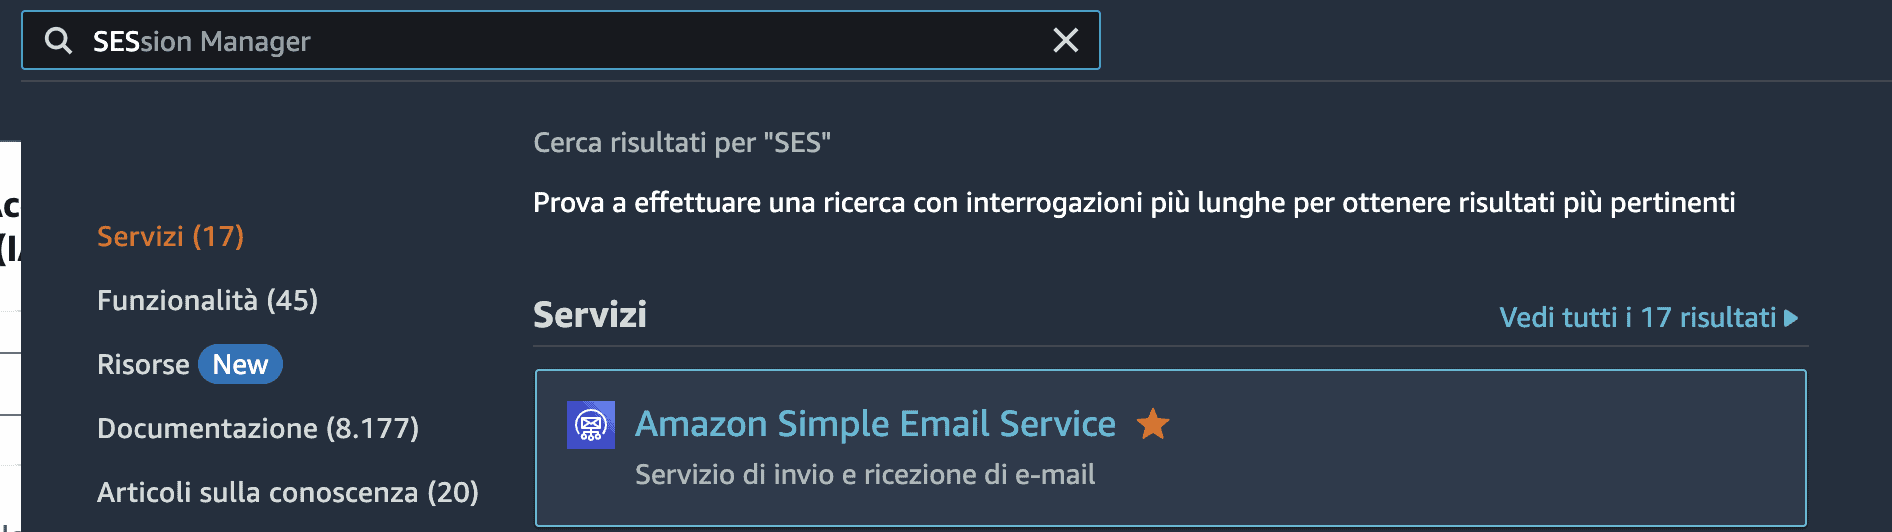 10 Amazon SES - Come Configurare Amazon SES per Inviare Email da Wordpress